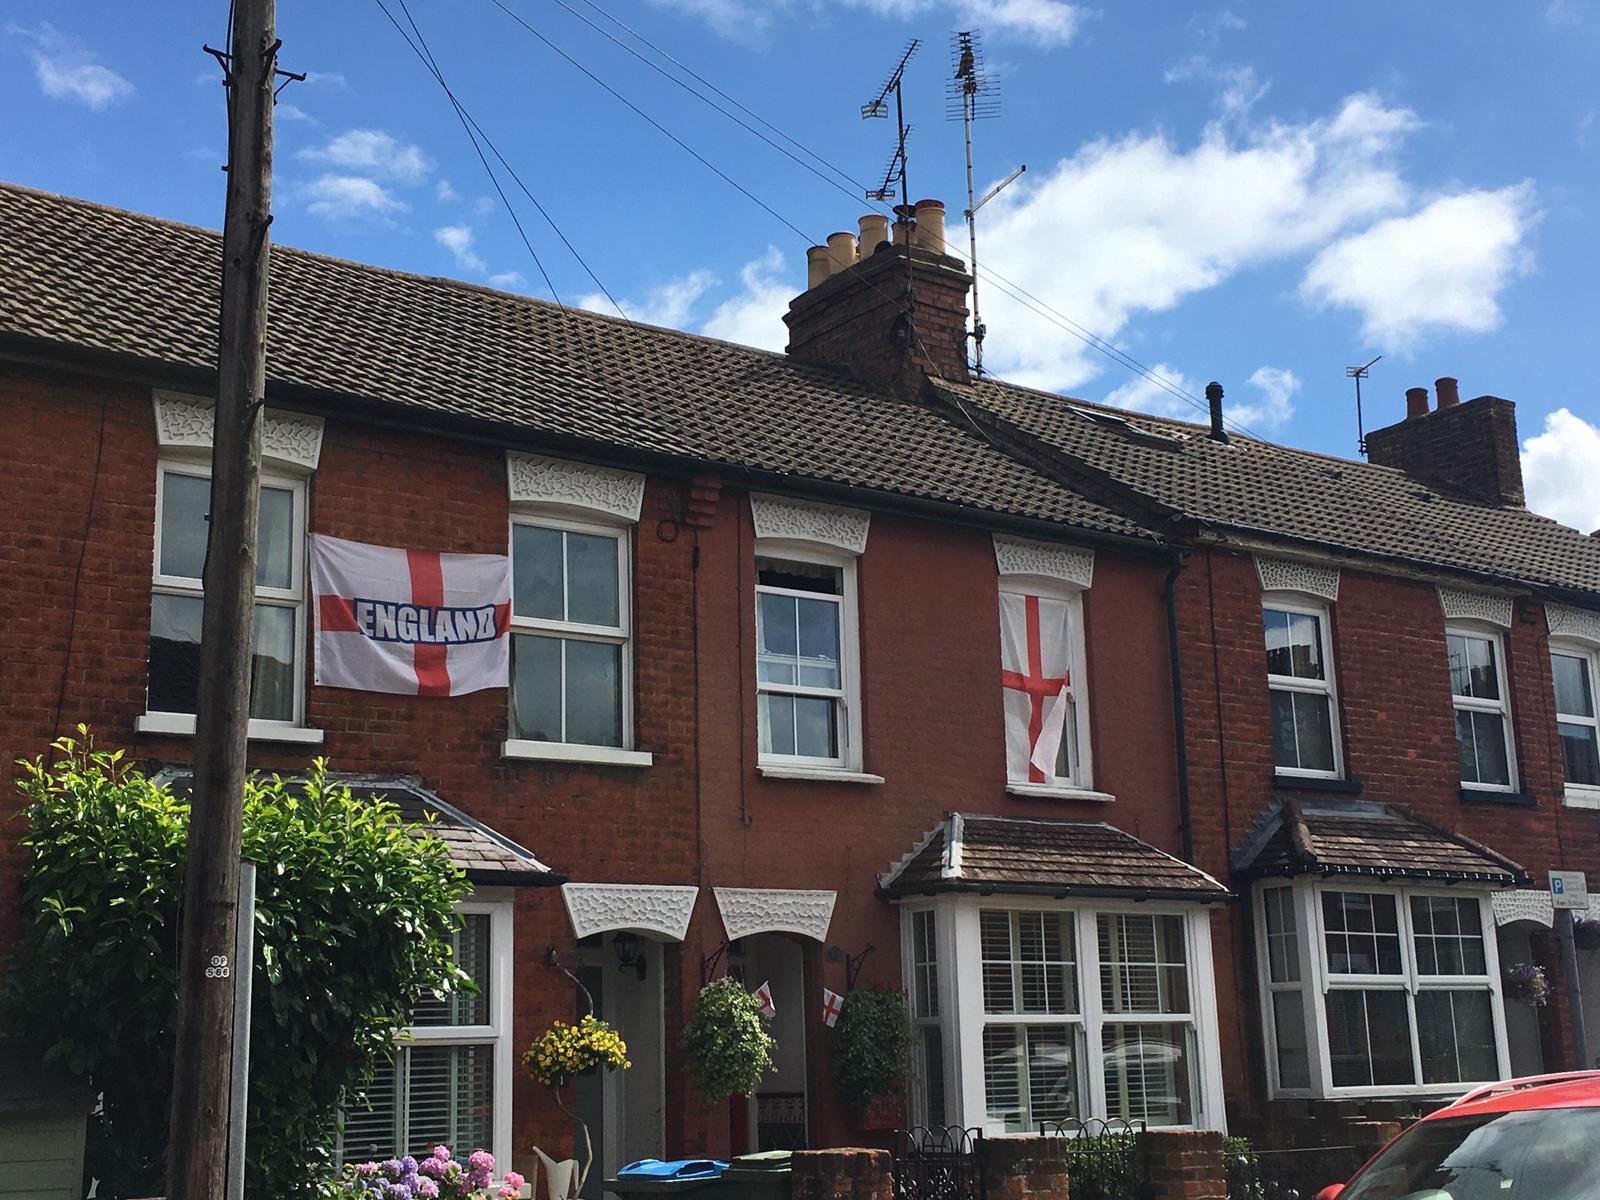 Highbridge Walk in Aylesbury are flying their flags high 